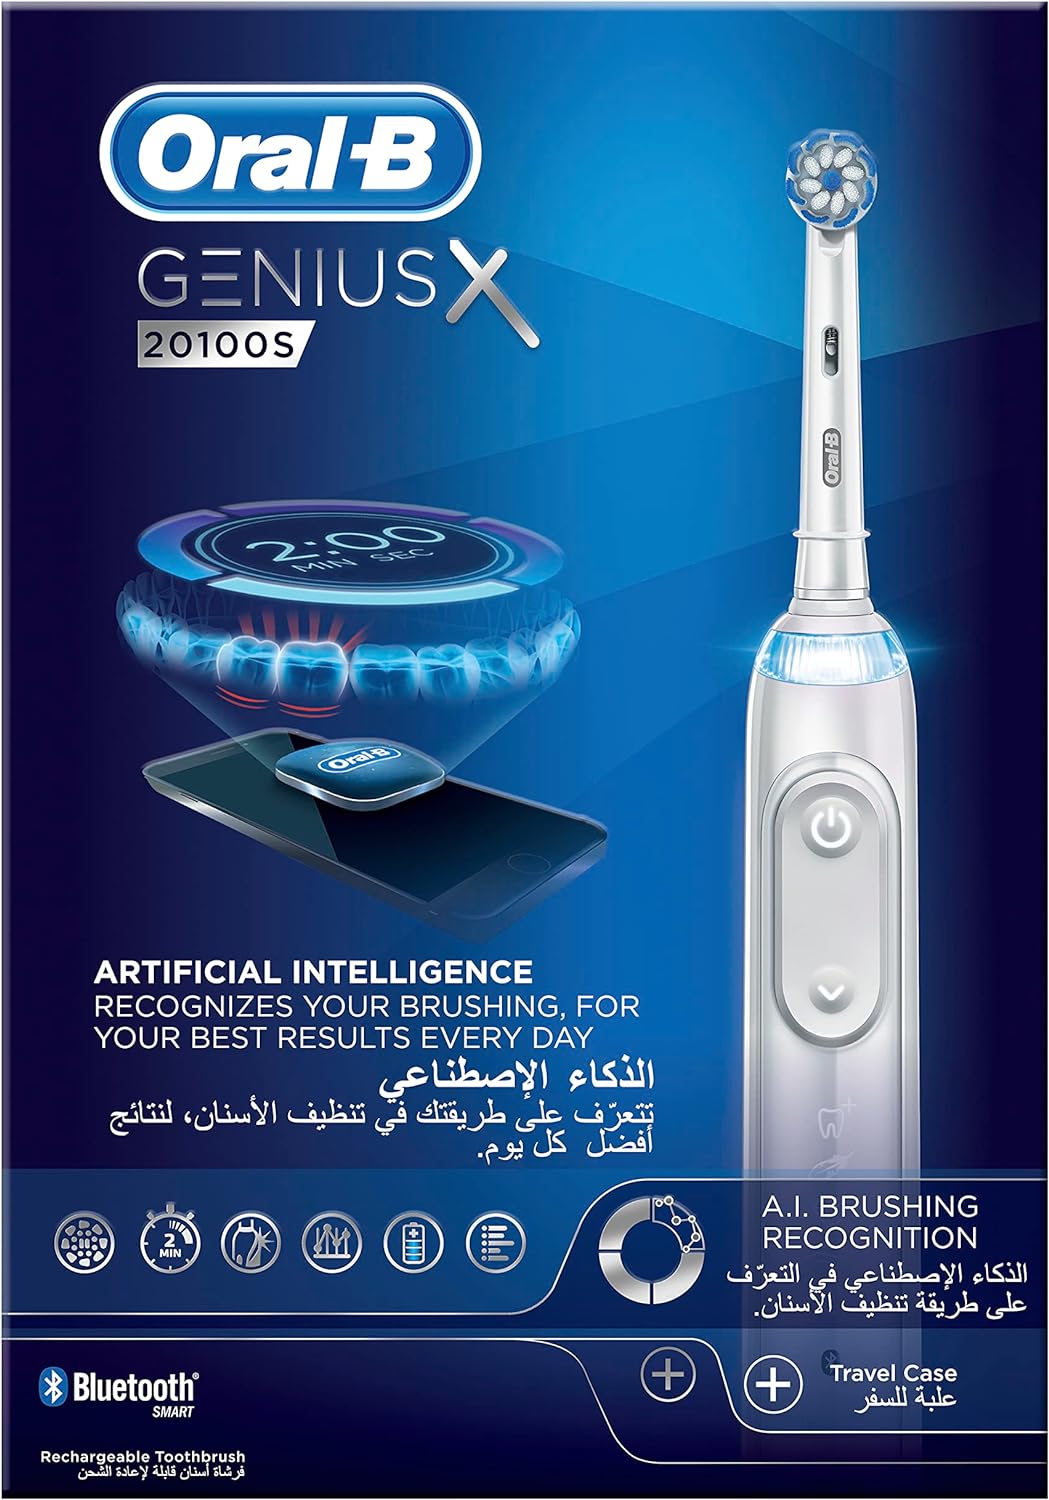 فرشاة اسنان كهربائية جينيس اكس صناعية من اورال-بي